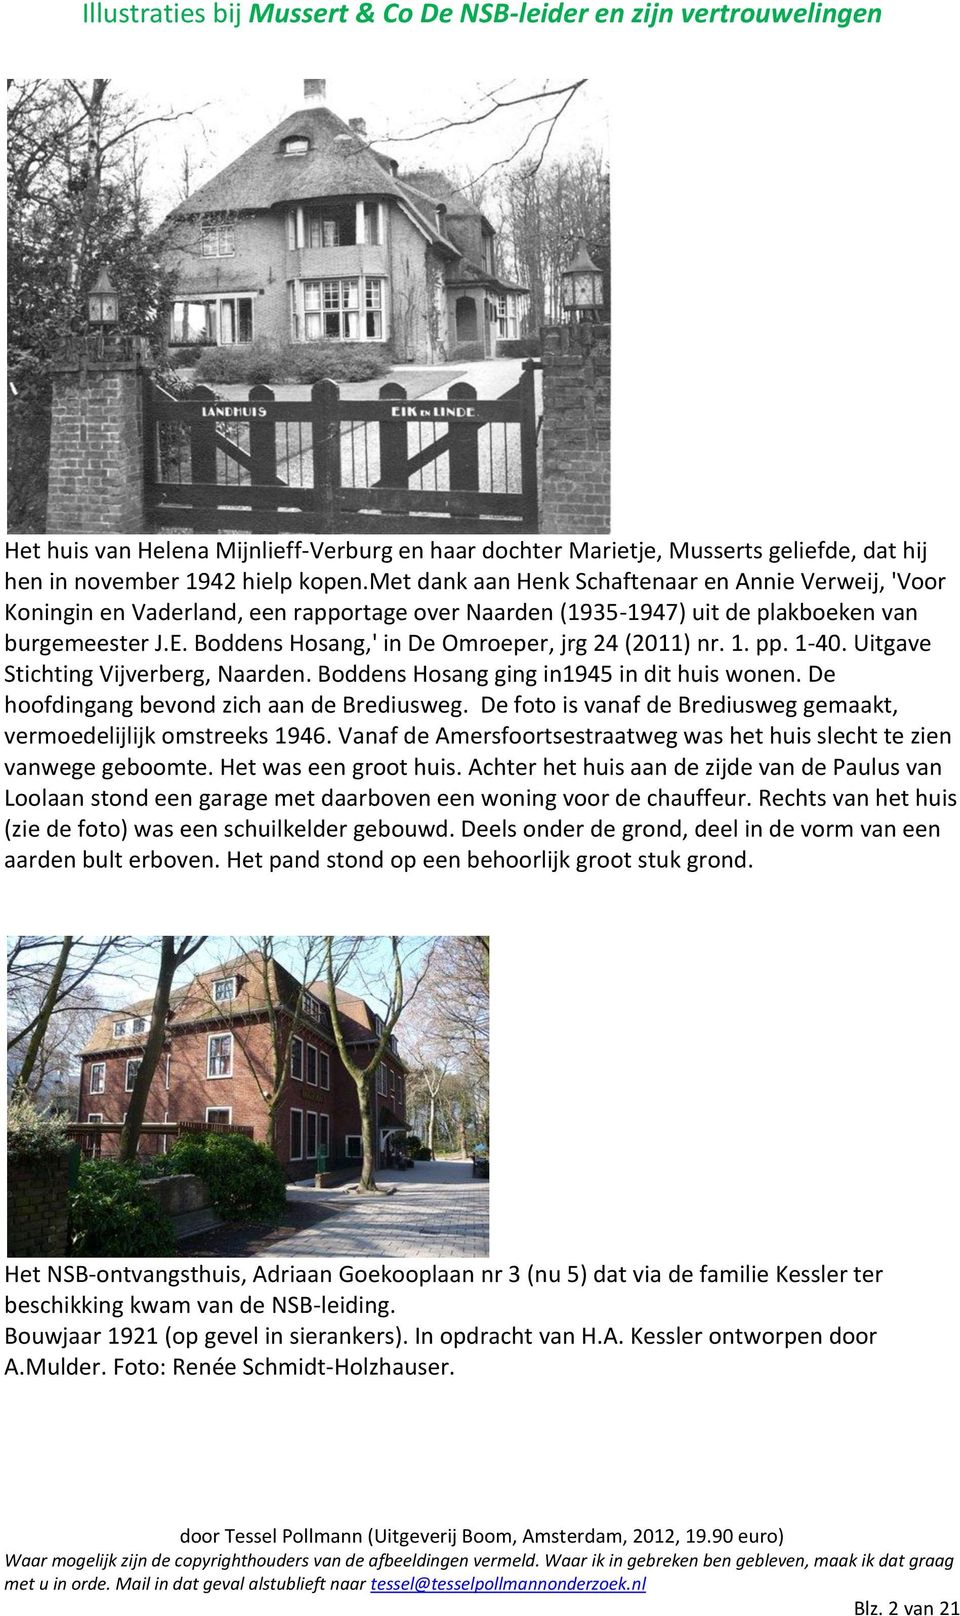 Boddens Hosang,' in De Omroeper, jrg 24 (2011) nr. 1. pp. 1-40. Uitgave Stichting Vijverberg, Naarden. Boddens Hosang ging in1945 in dit huis wonen. De hoofdingang bevond zich aan de Brediusweg.